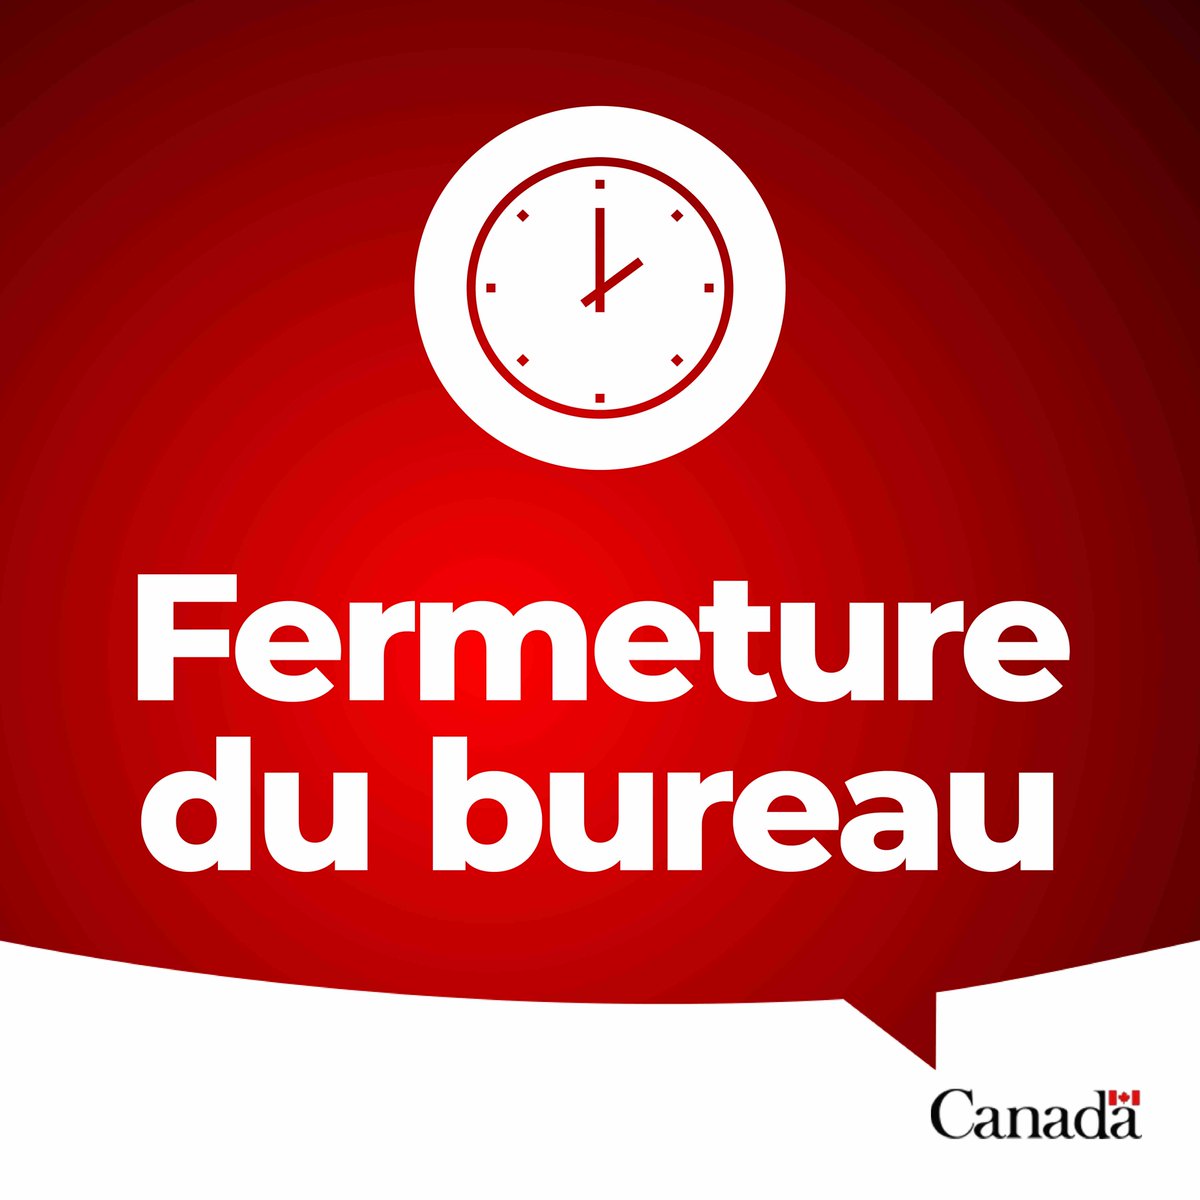 ➡[AVIS] Veuillez noter que l’Ambassade du Canada au Sénégal sera fermée le 1er avril 2024. Citoyens canadiens 🇨🇦 : En cas d’urgence, veuillez communiquer avec nous à sos@international.gc.ca ou au +1 613 996 8885.